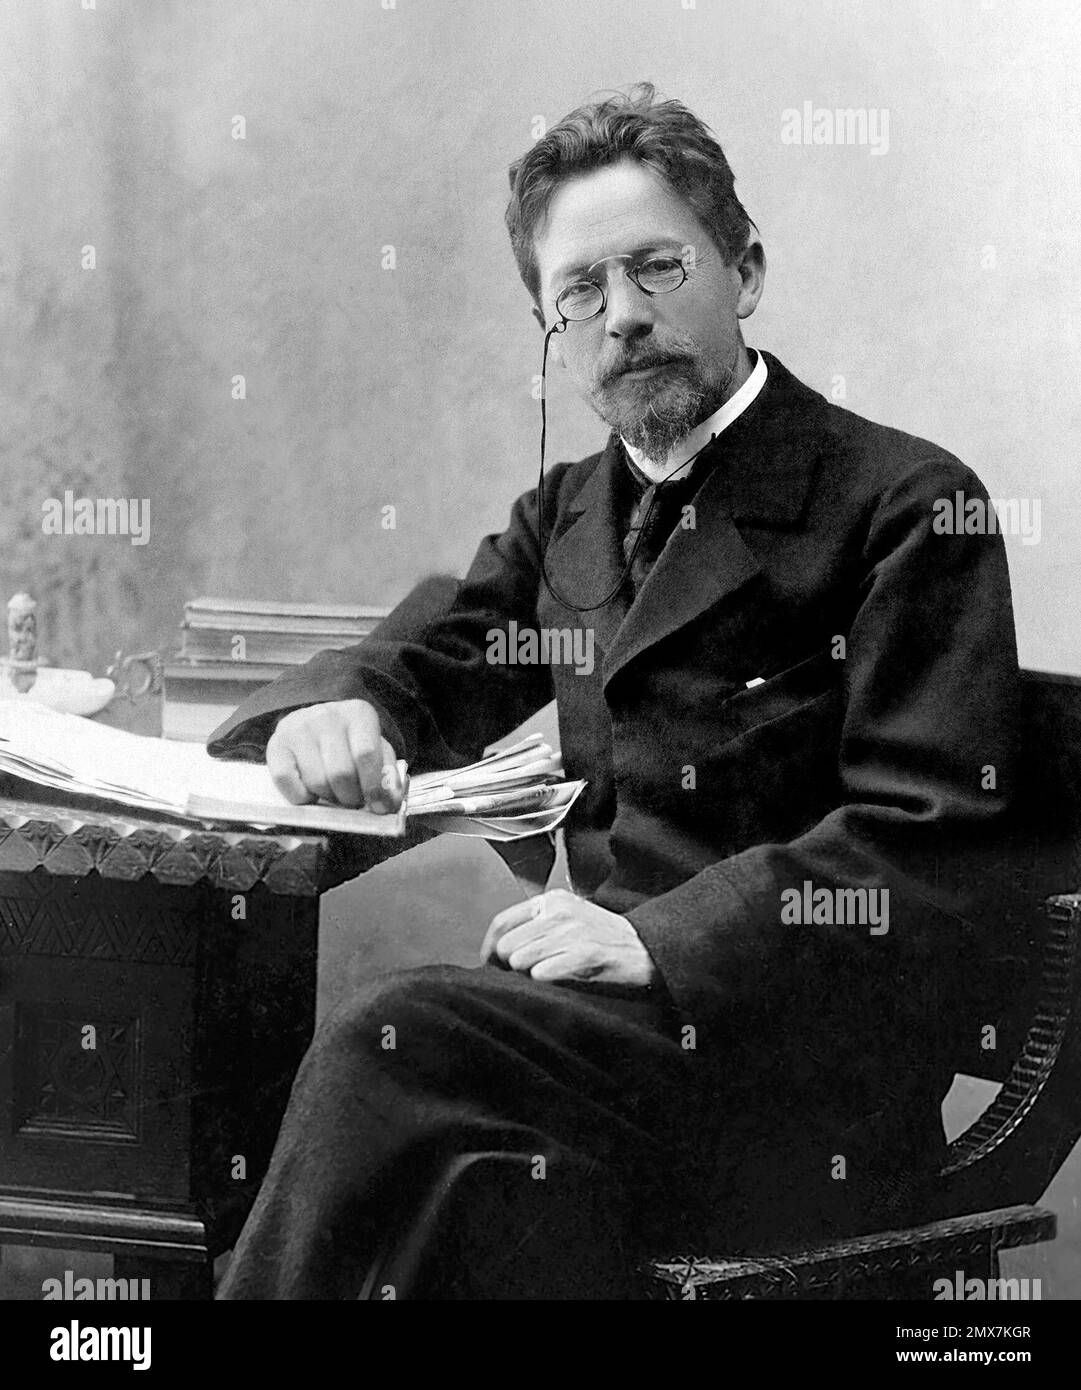 Anton Chekhov. Portrait of the Russian playwright, Anton Pavlovich Chekhov (1860-1904),1889 Stock Photo